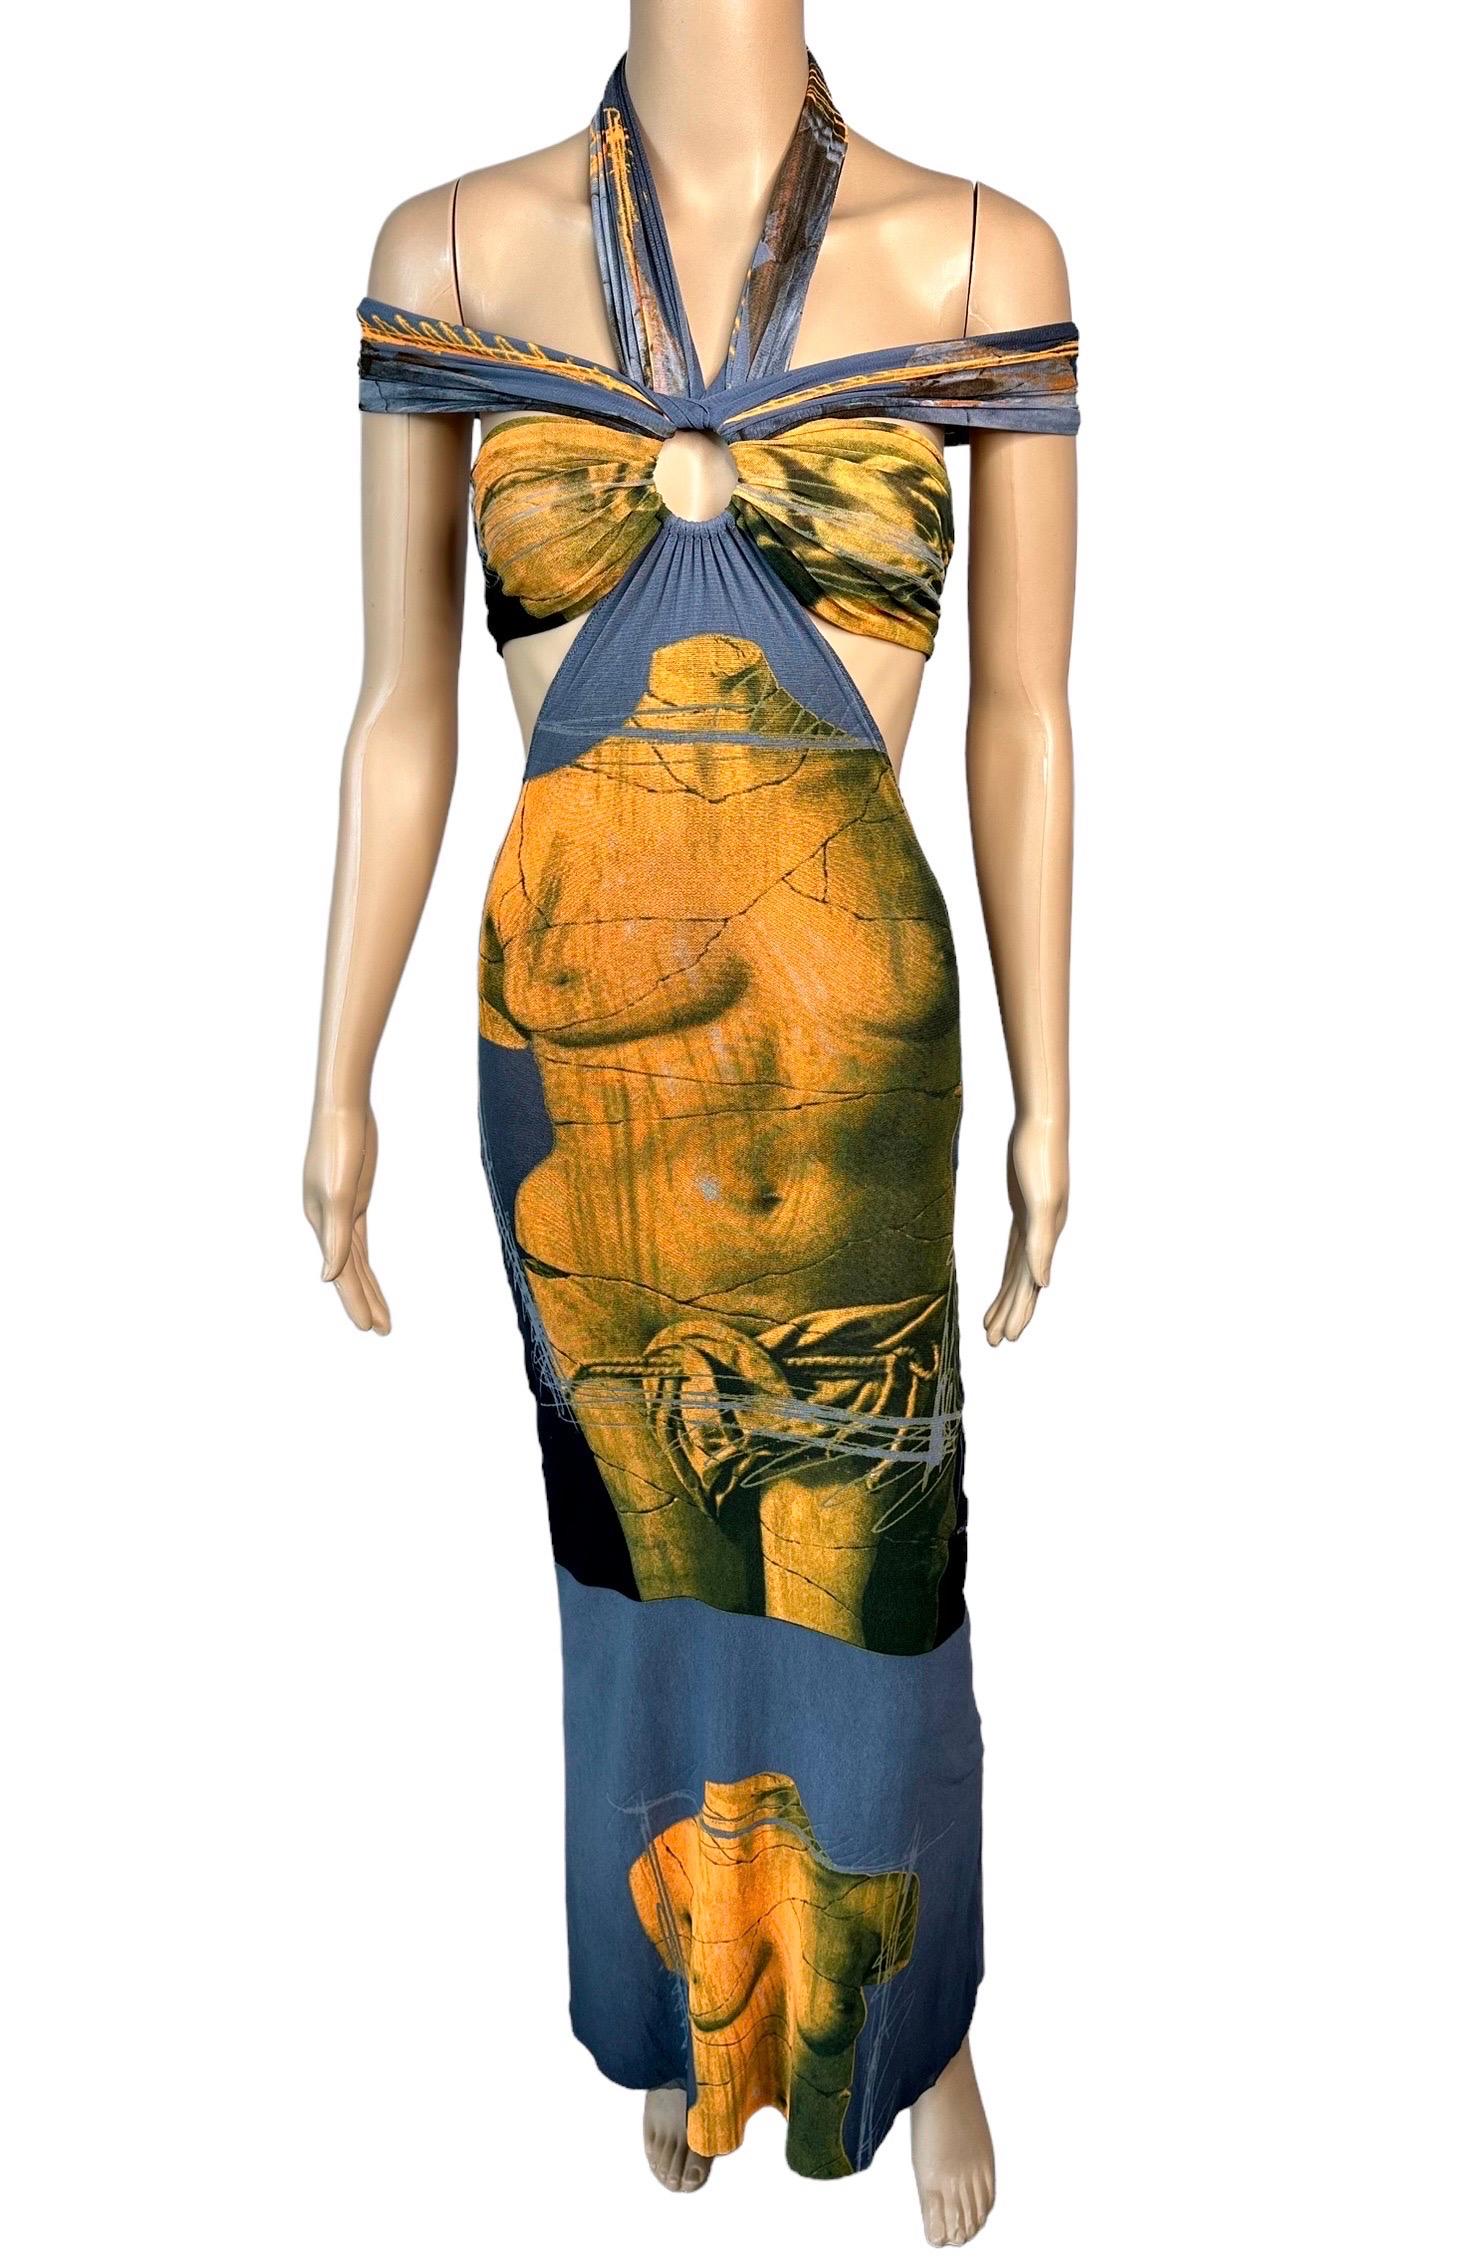 Jean Paul Gaultier Soleil S/S 1999 Vintage Venus De Milo Cutout Mesh Sheer Dress 5